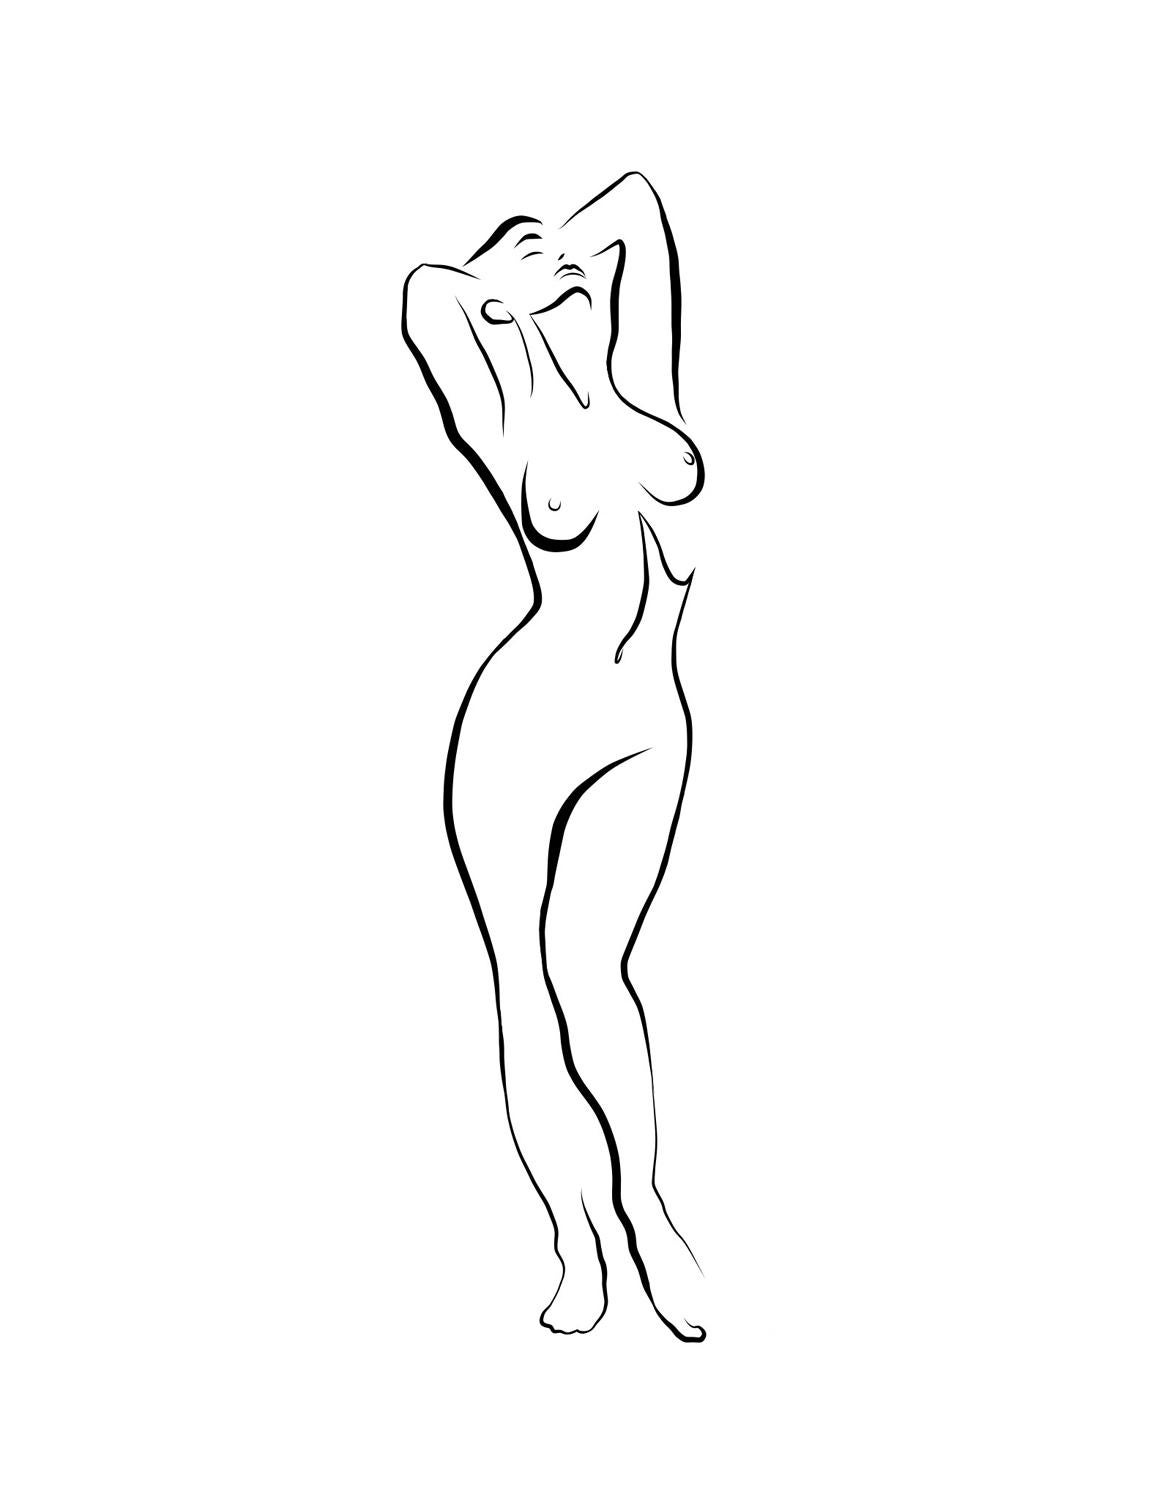 Michael Binkley Nude Print – Haiku #34, 1/50 - Digitale Vector-Zeichnung, stehende weibliche nackte weibliche Aktfigur, Figur